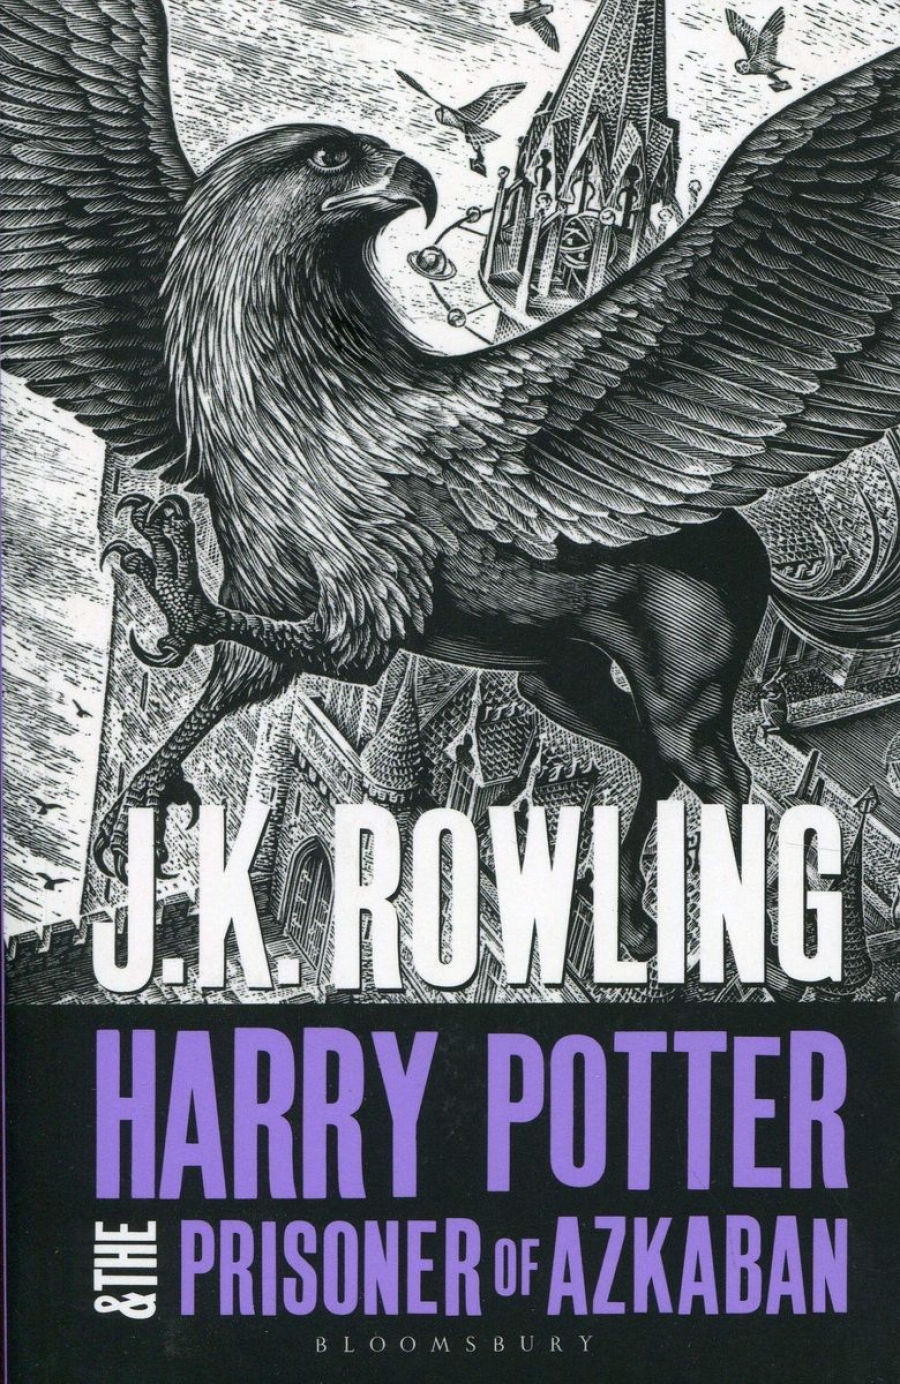 Rowling J.K. Harry Potter and the Prisoner of Azkaban 